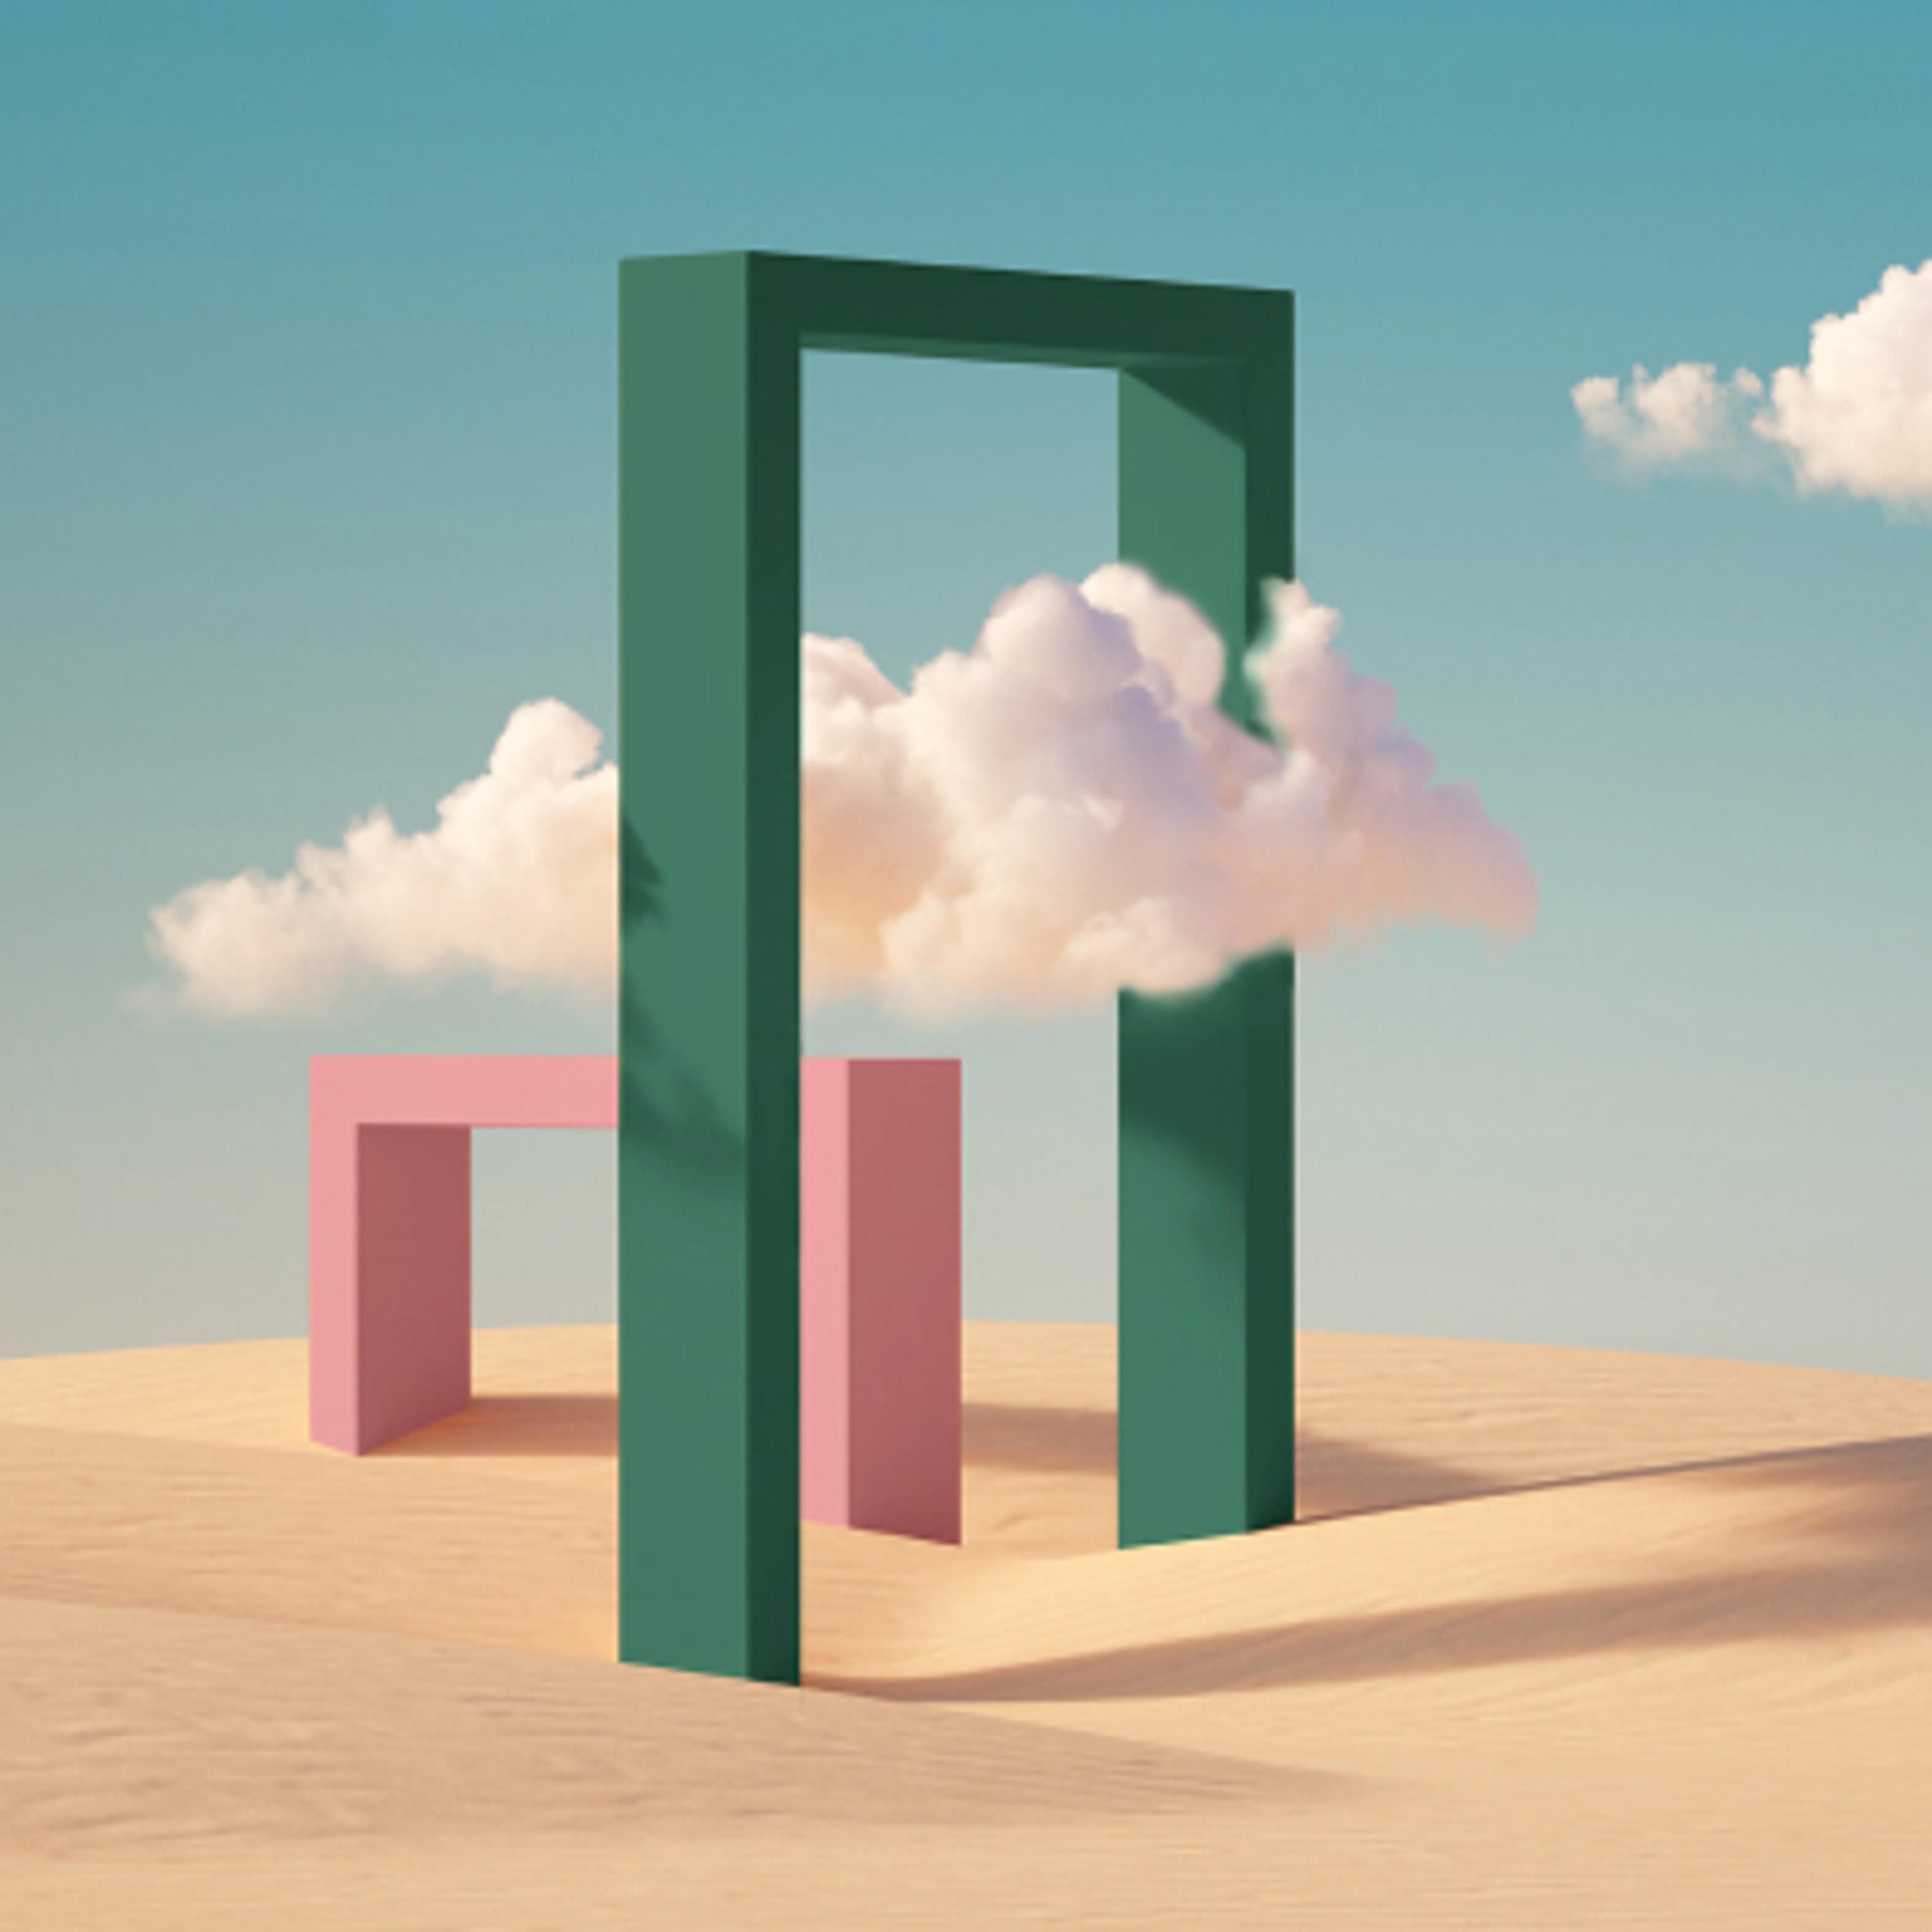 En grønn døråpning midt i ørkenen. Under på tvers er en rosa, lavere døråpning. En sky passerer den grønne døråpningen. Blå himmel i bakgrunn. 